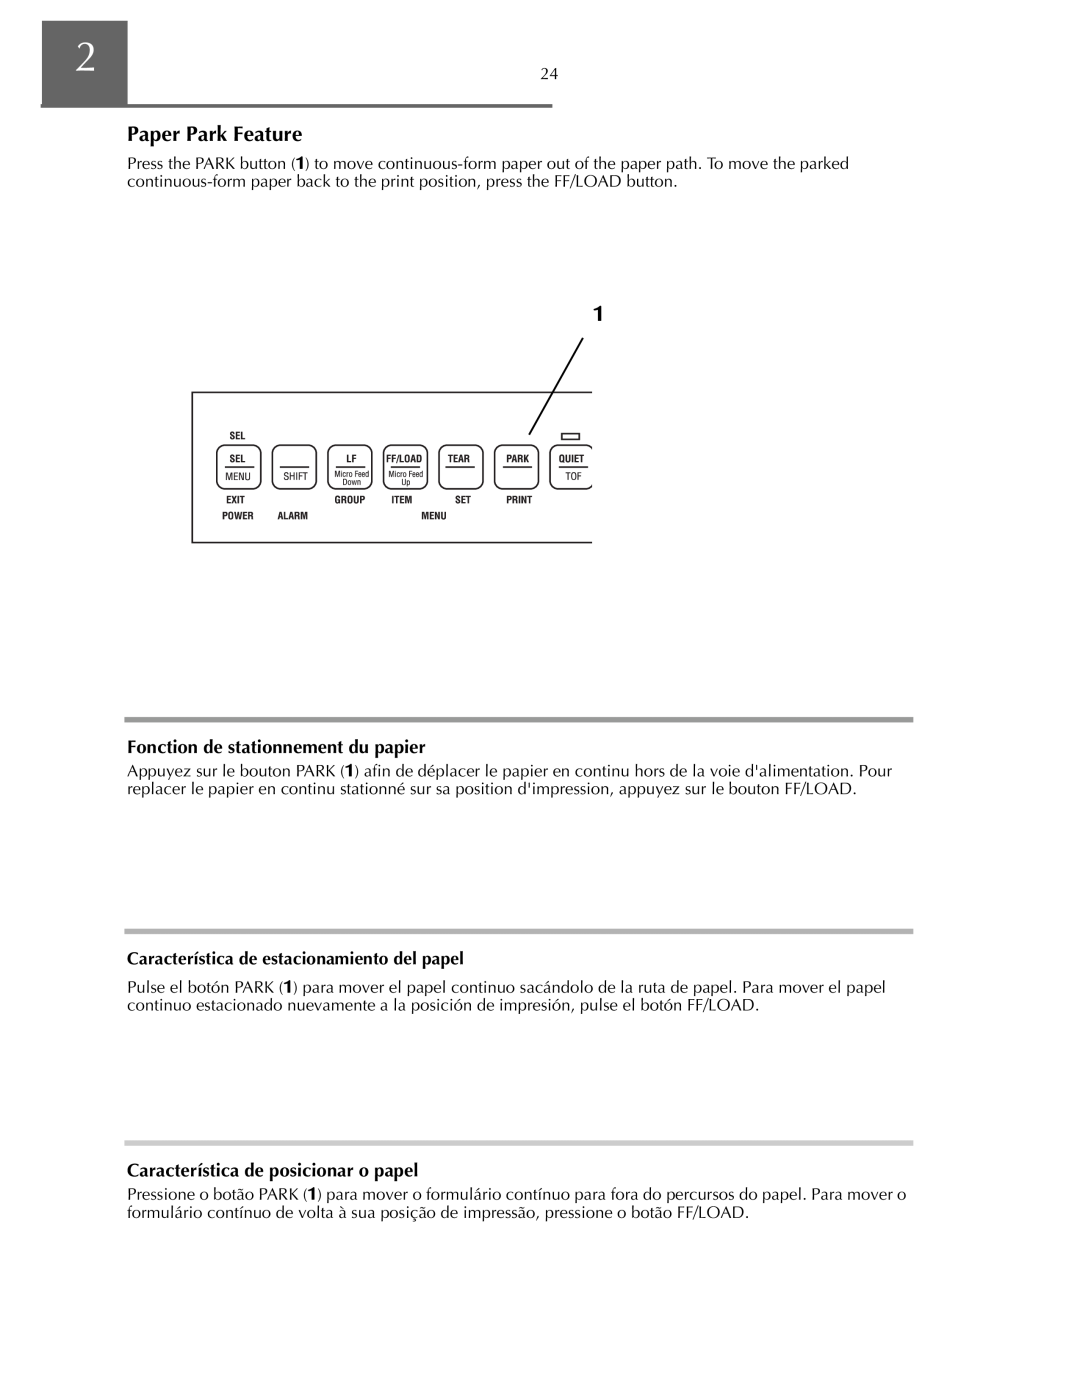 Oki ML590 manual Característica de posicionar o papel, Característica de estacionamiento del papel 